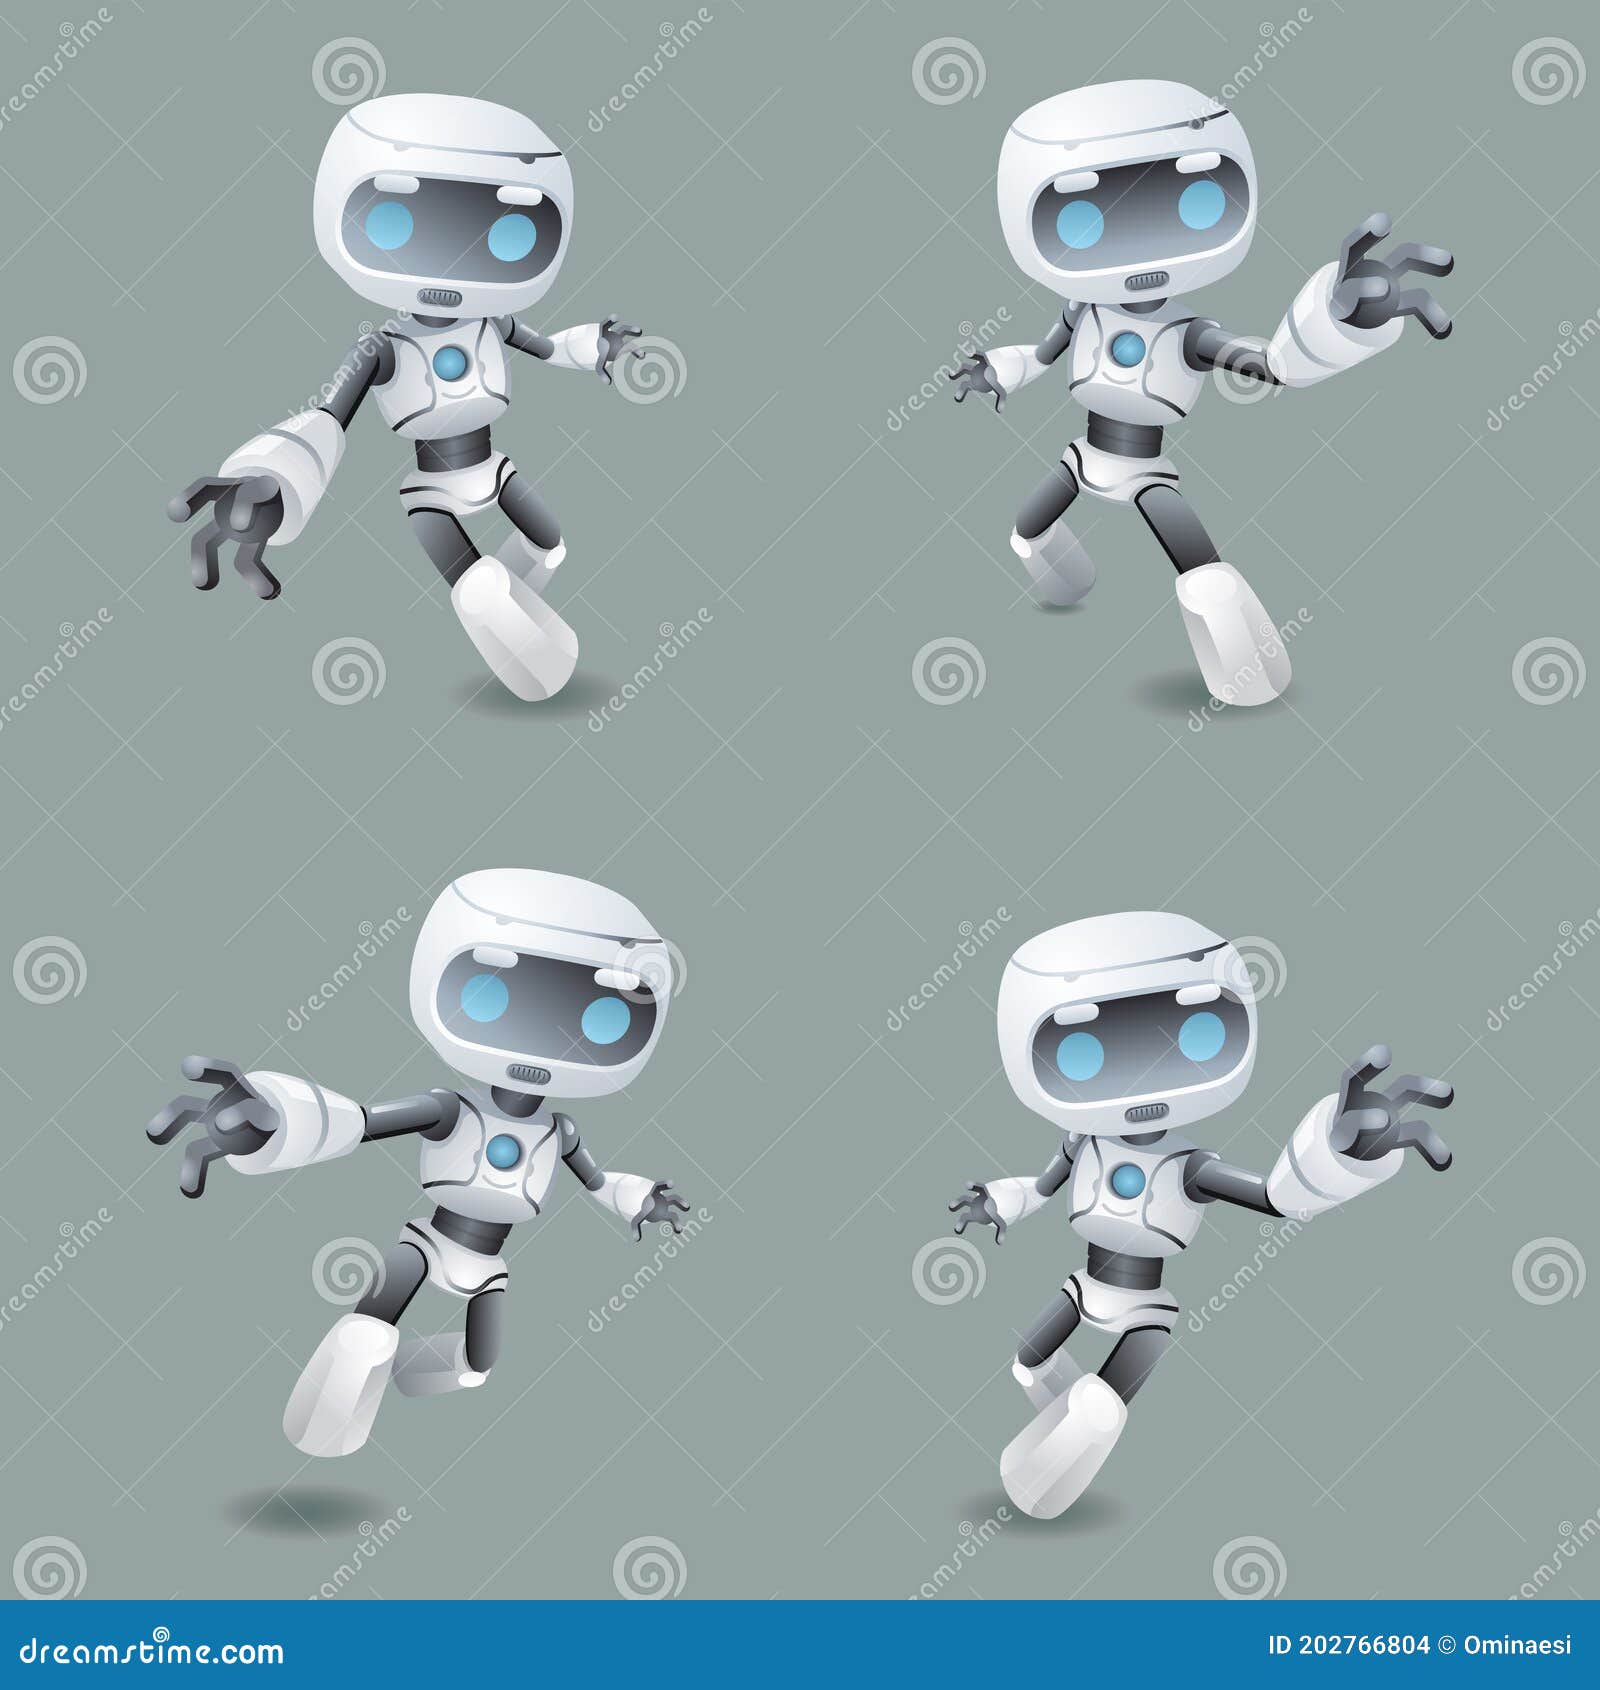 heroic pose robot technology set  